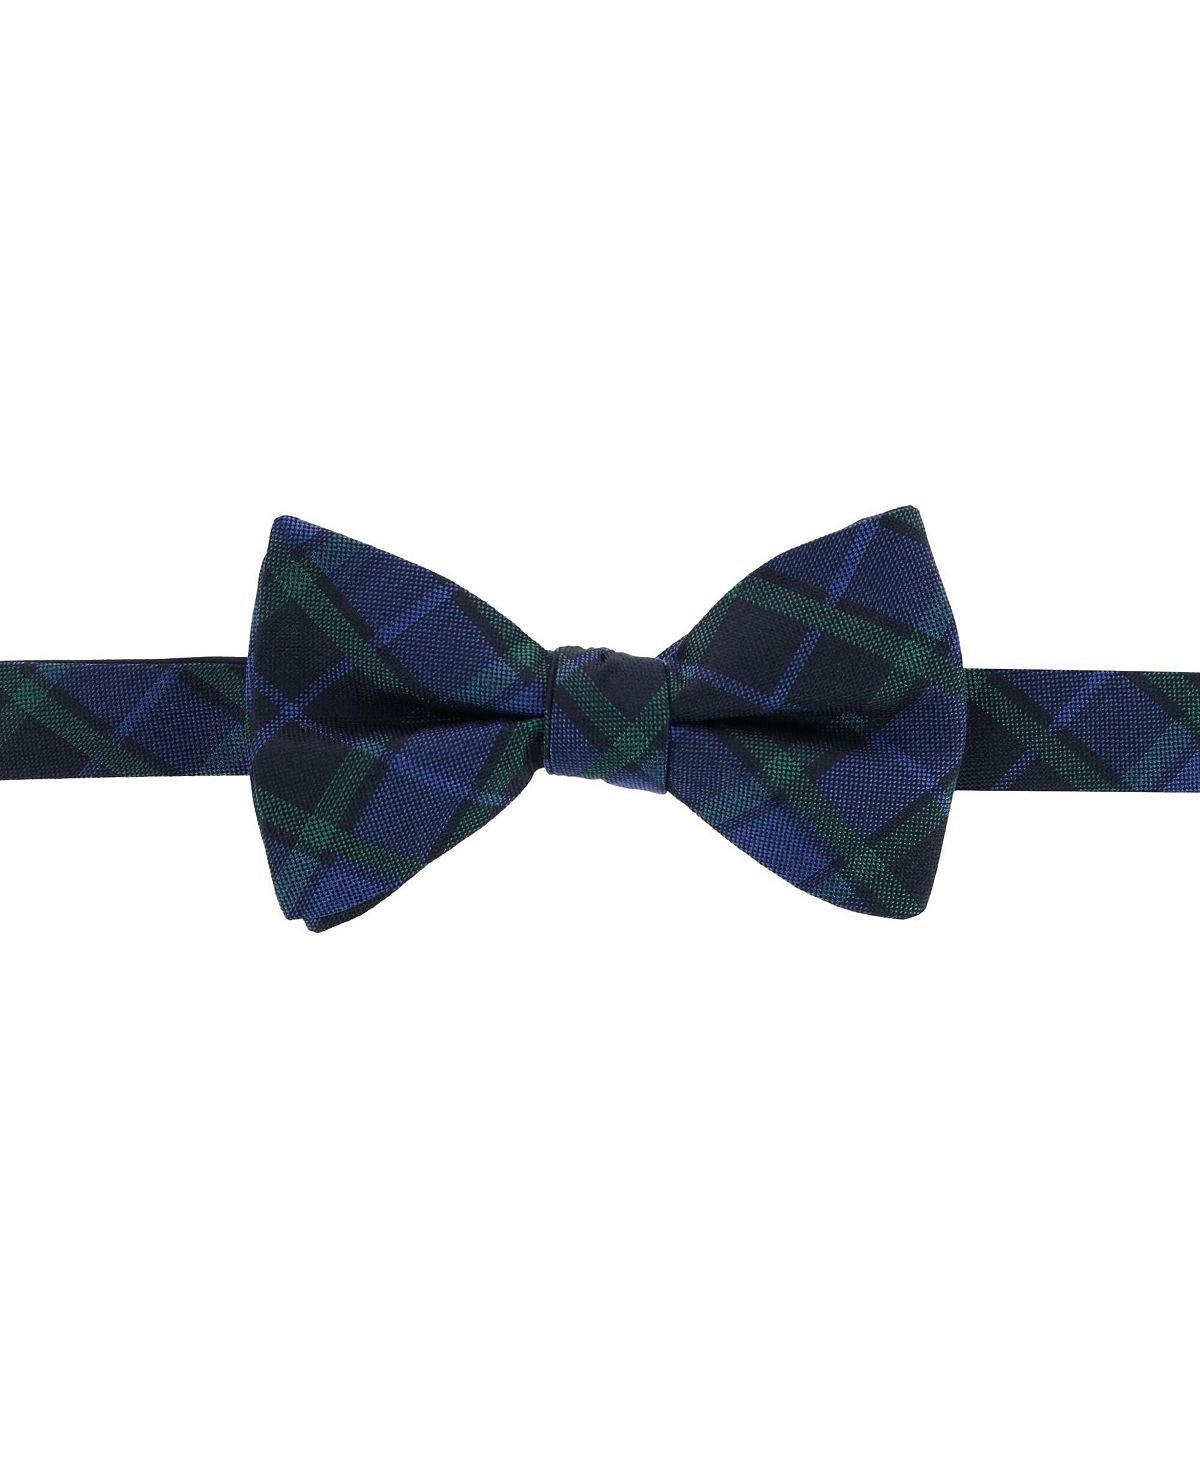 Зелено-темно-синий шелковый галстук-бабочка в клетку Ives Blackwatch TRAFALGAR серый галстук бабочка самовяз rene lezard 64768